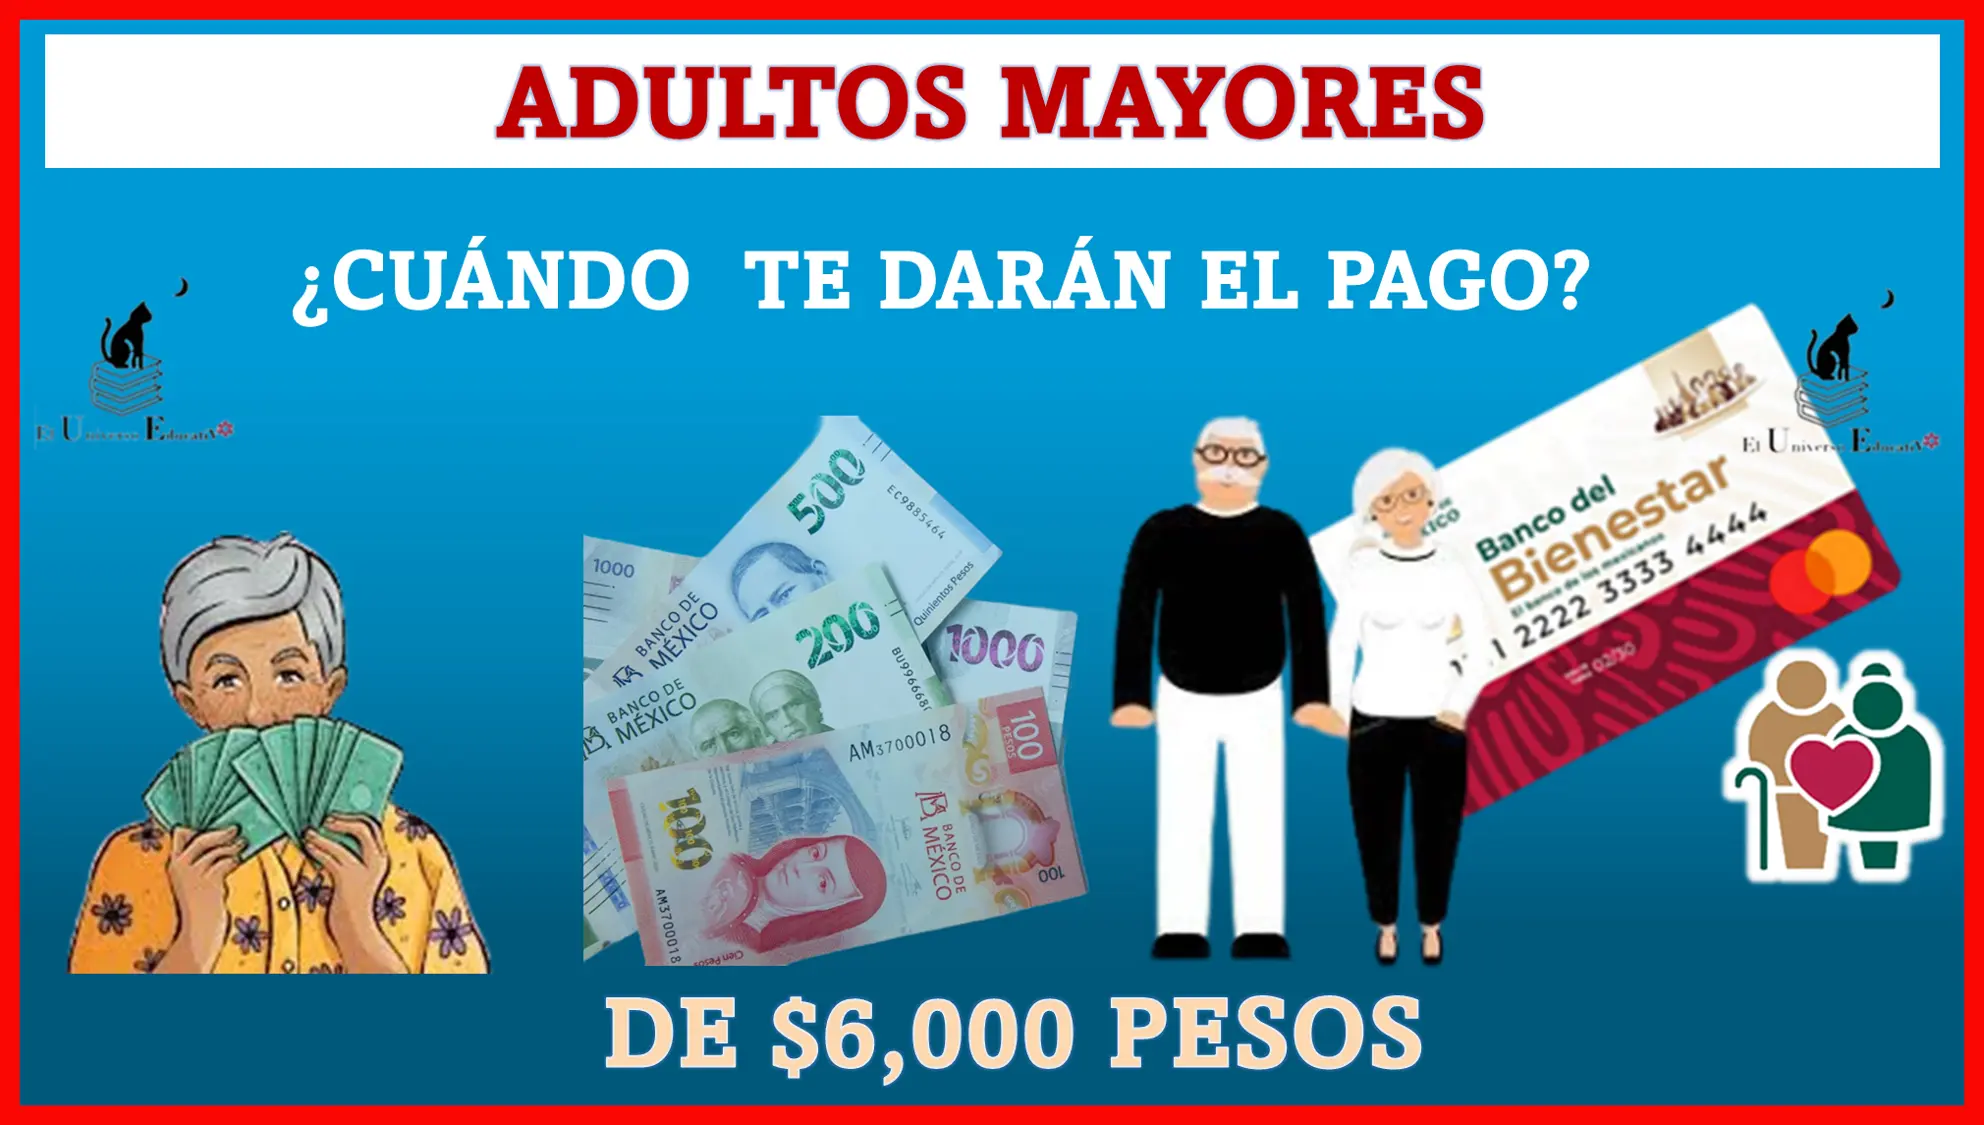 ADULTOS MAYORES | ¿CUÁNDO TE DARÁN EL PAGO DE $6,000 PESOS? 